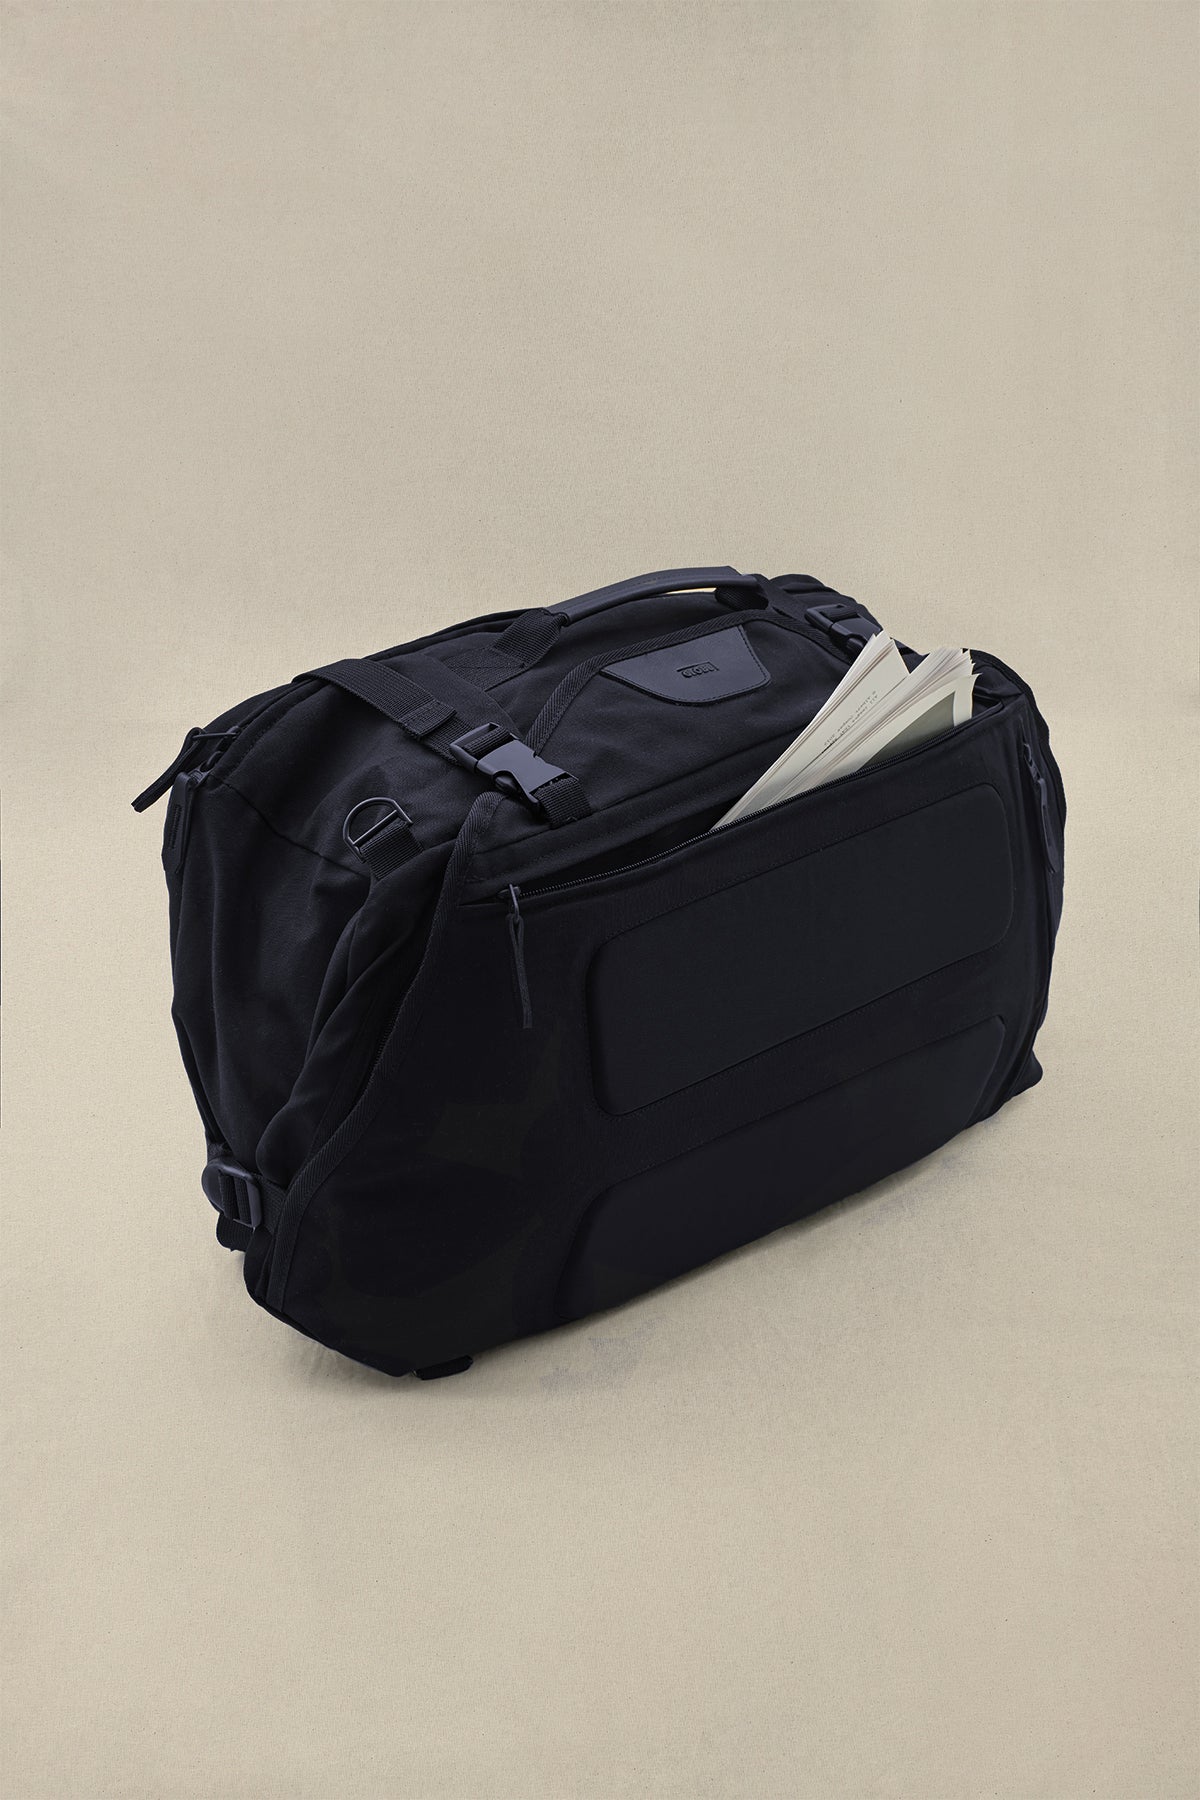 Globe BAGS Velocity 3 in 1 Travel Bag in Black